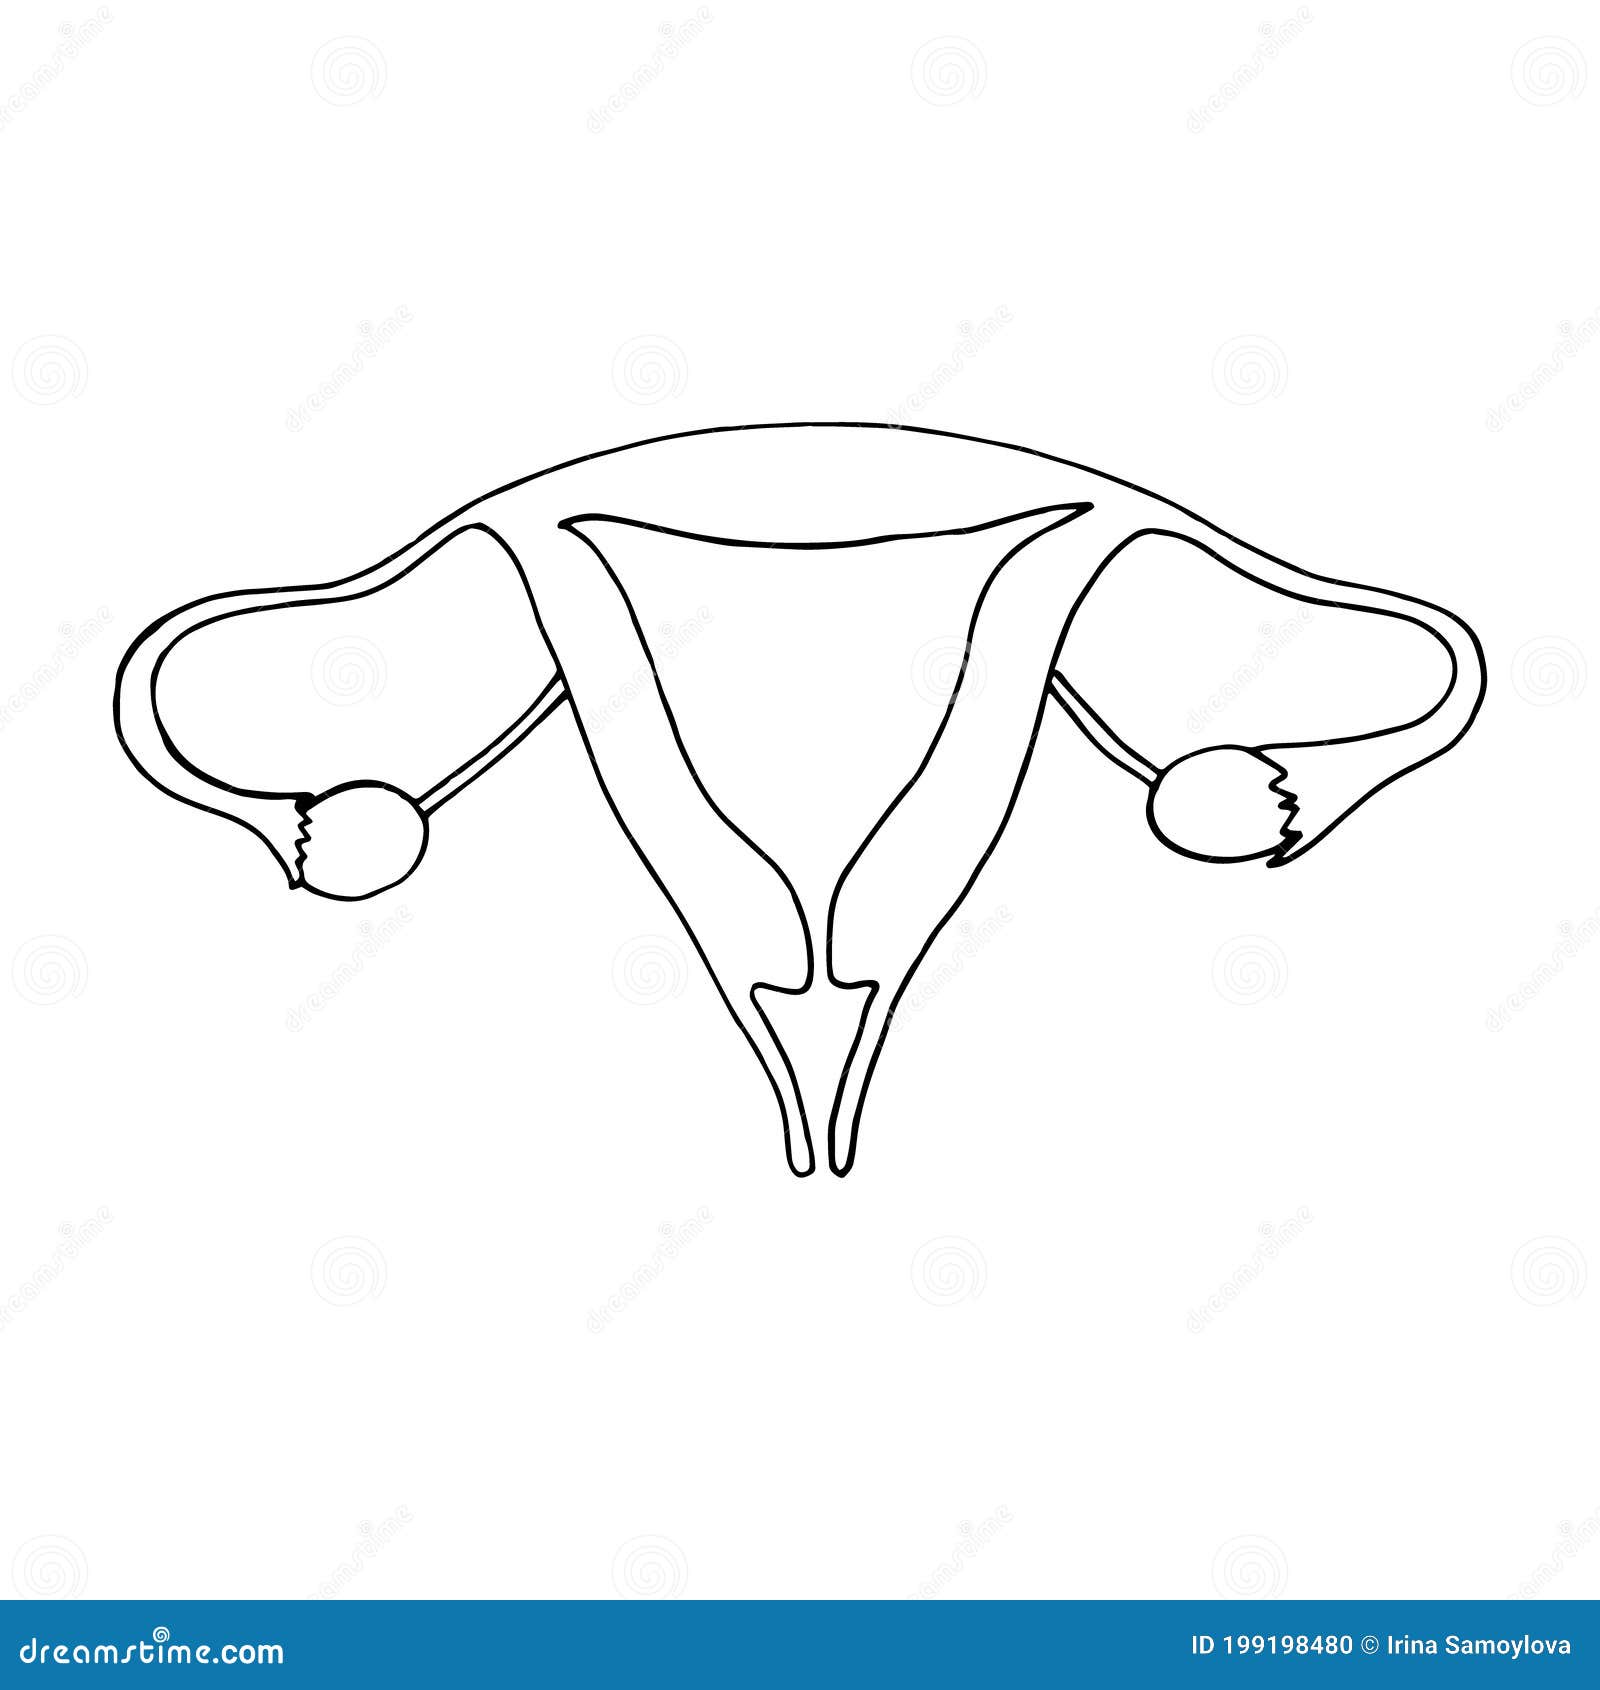 用女性生殖器涂鸦图片-商业图片-正版原创图片下载购买-VEER图片库